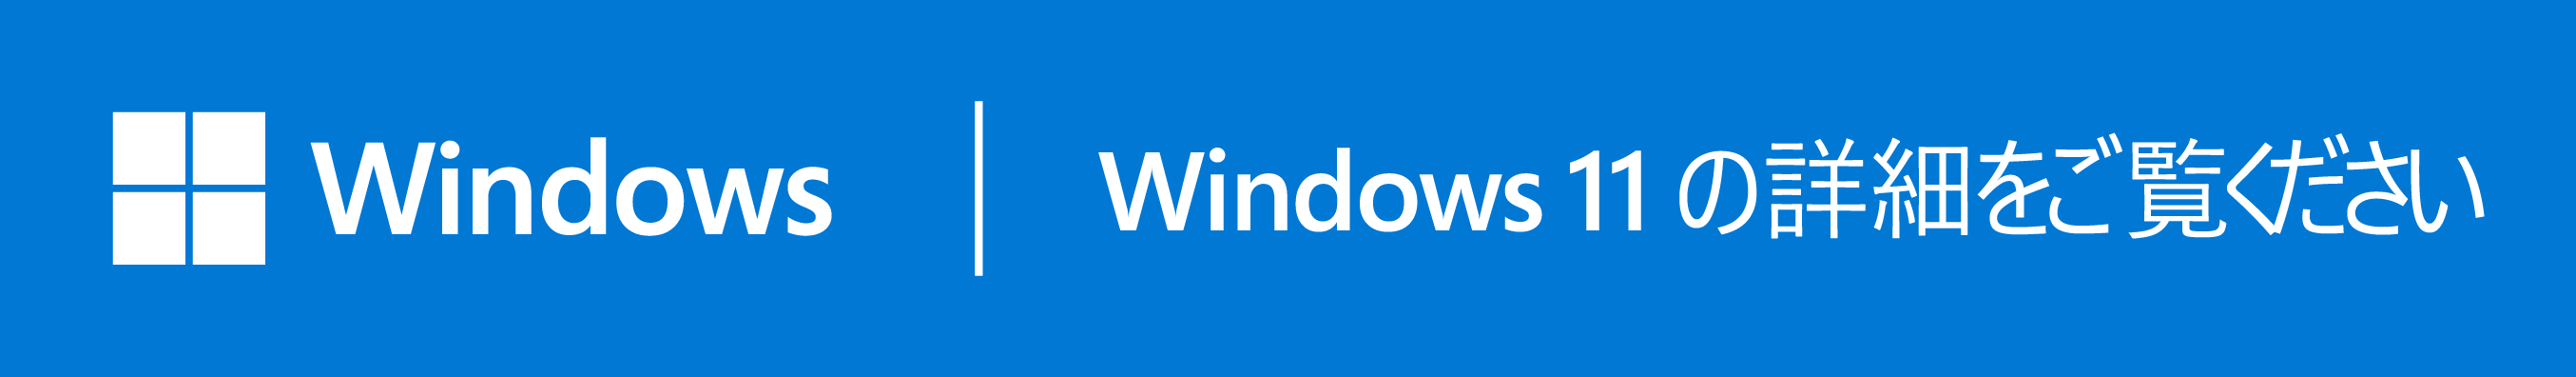 ASUS はビジネスに Windows 11 Pro をお勧めします。 